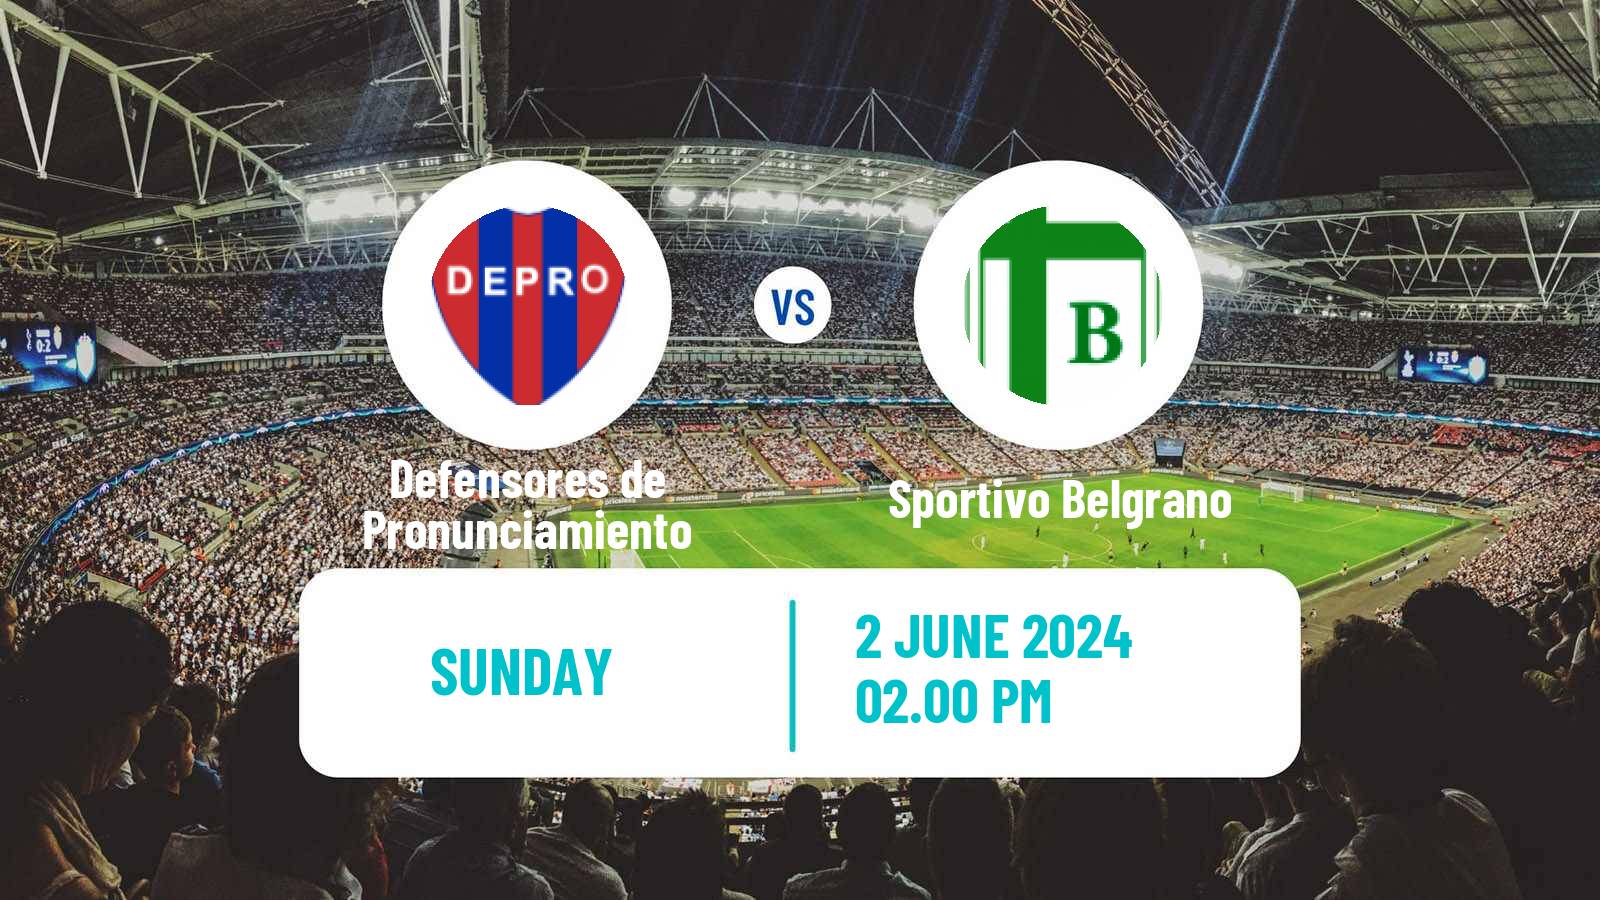 Soccer Argentinian Torneo Federal Defensores de Pronunciamiento - Sportivo Belgrano